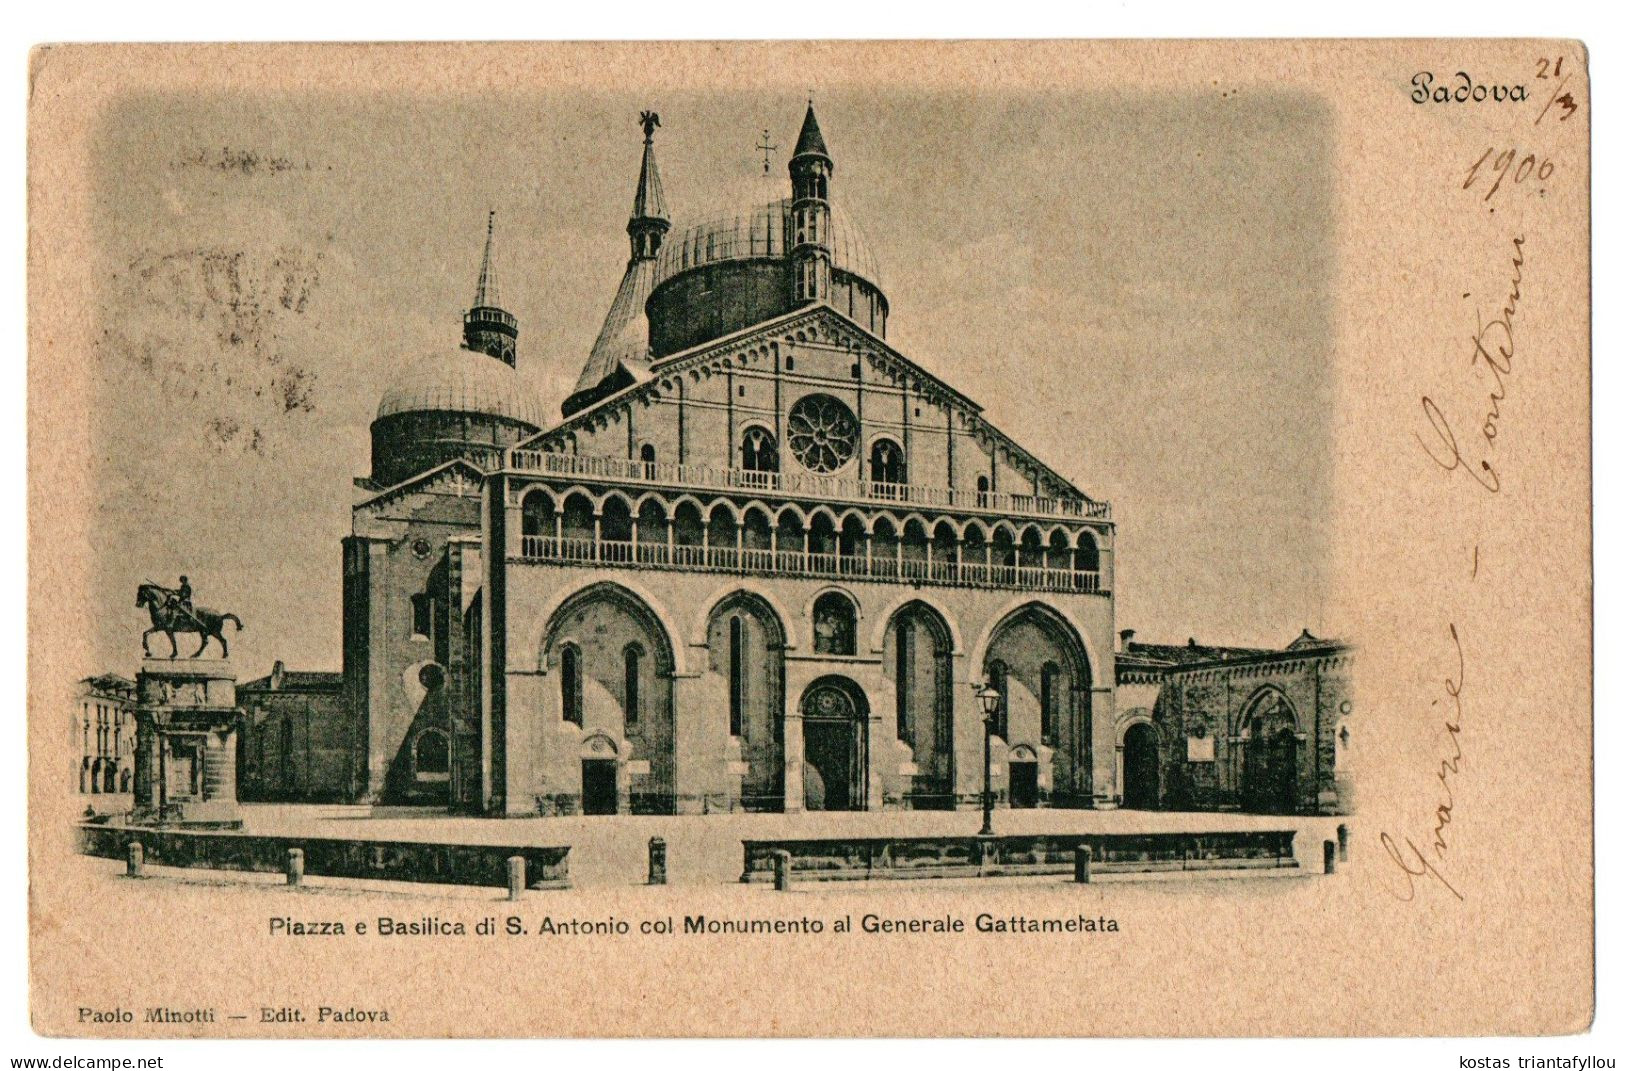 1.7.20 ITALY, VENETO, PADOVA, PIAZZA E BASILICA DI S. ANTONIO,1900, POSTCARD - Churches & Cathedrals